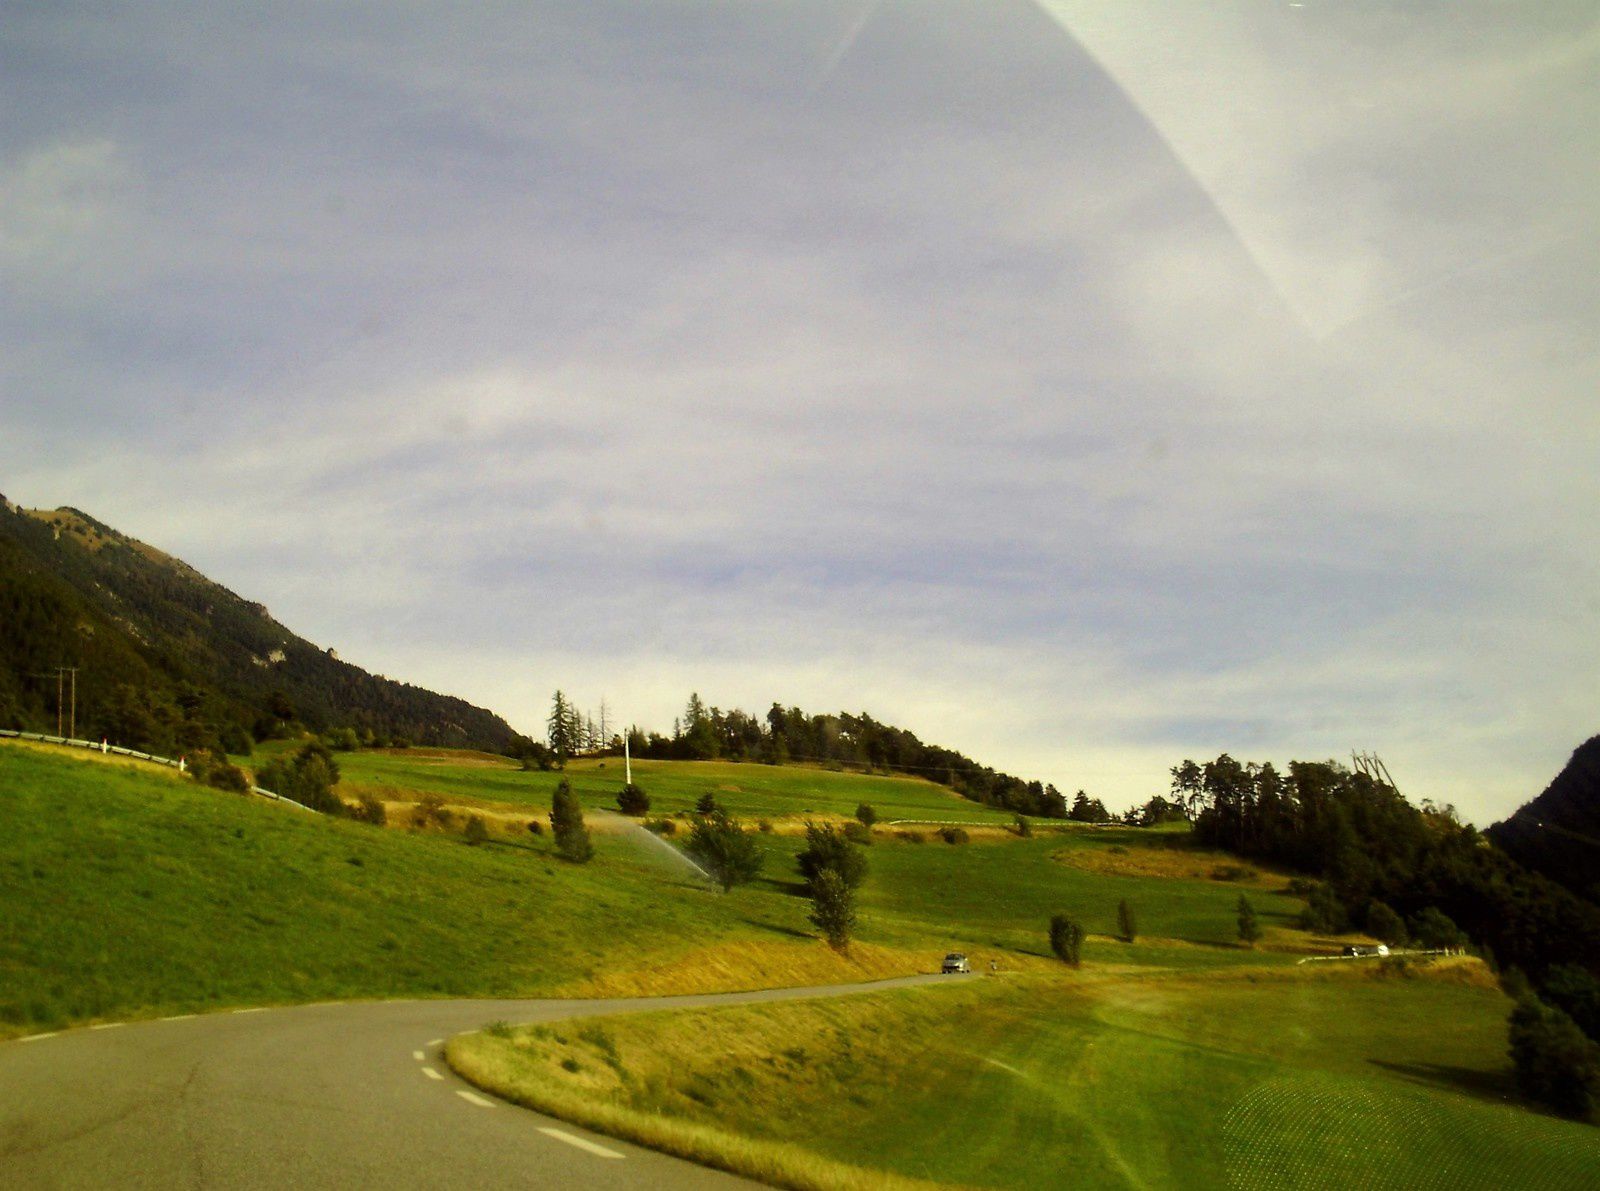 Goldwing - Notre voyage dans les Hautes-Alpes en Goldwing 1800 et Varadero 125 - 2ème jour 3/3